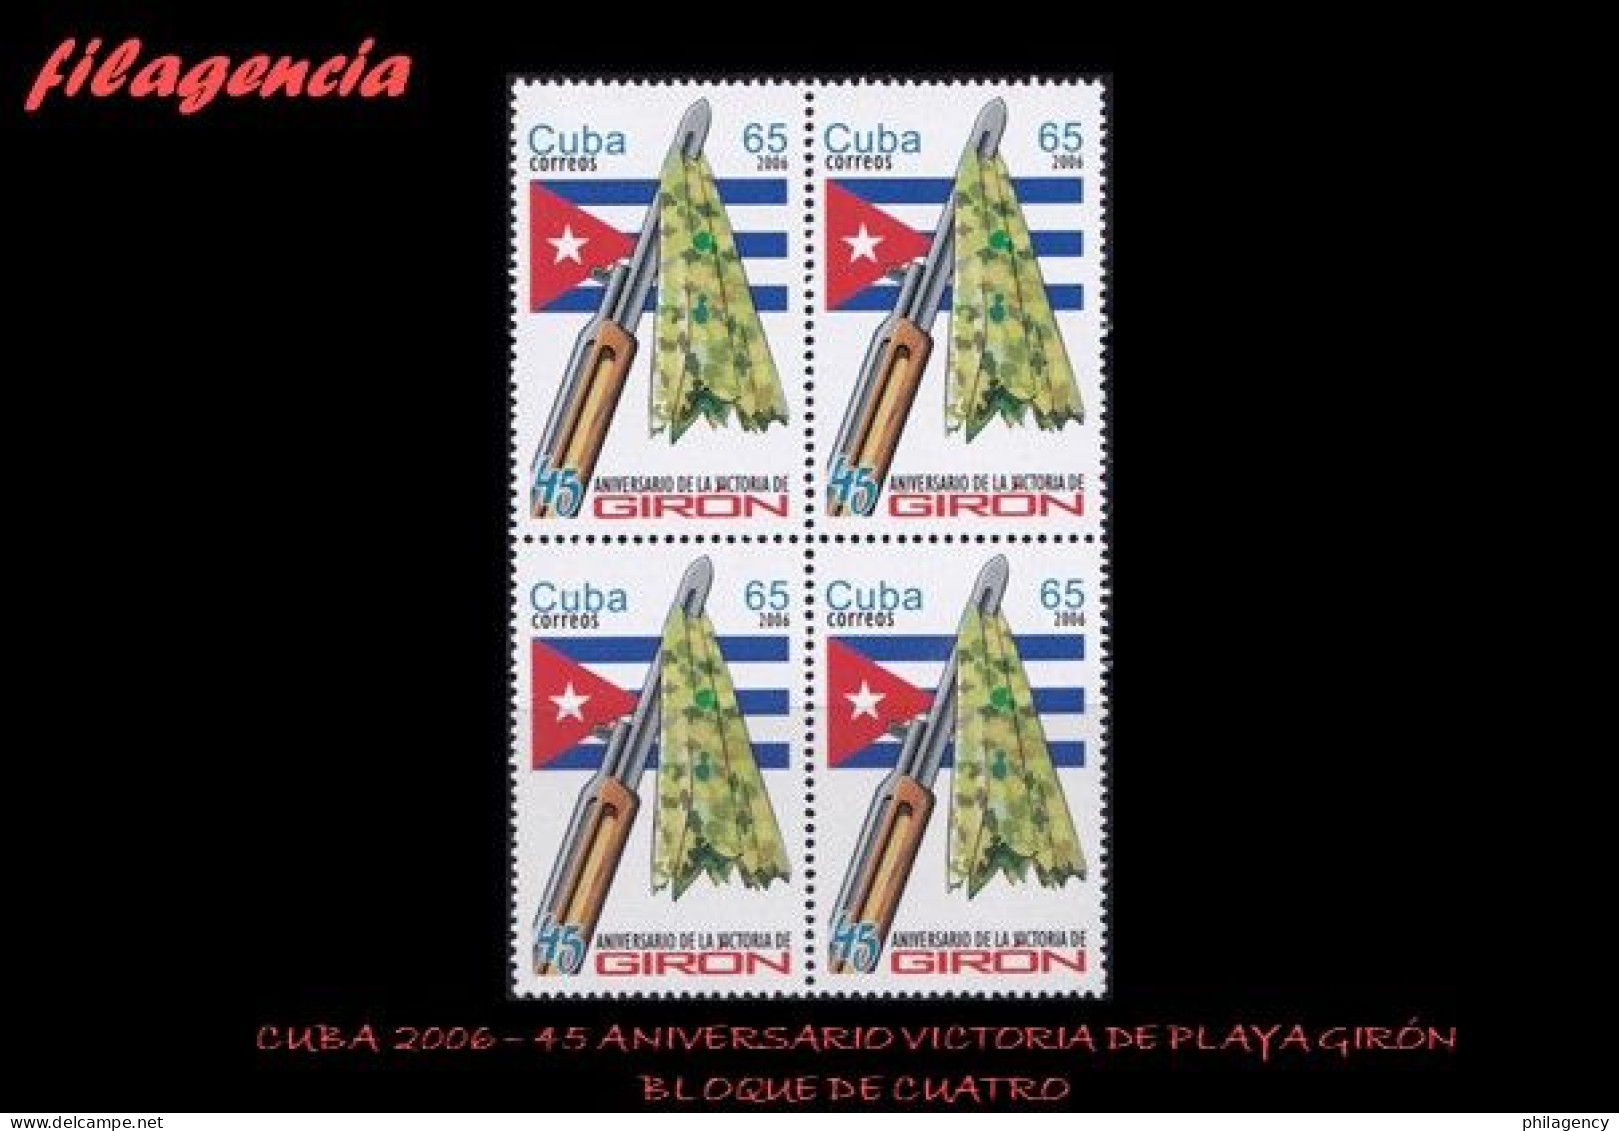 CUBA. BLOQUES DE CUATRO. 2006-09 45 ANIVERSARIO DE LA VICTORIA DE PLAYA GIRÓN - Ungebraucht